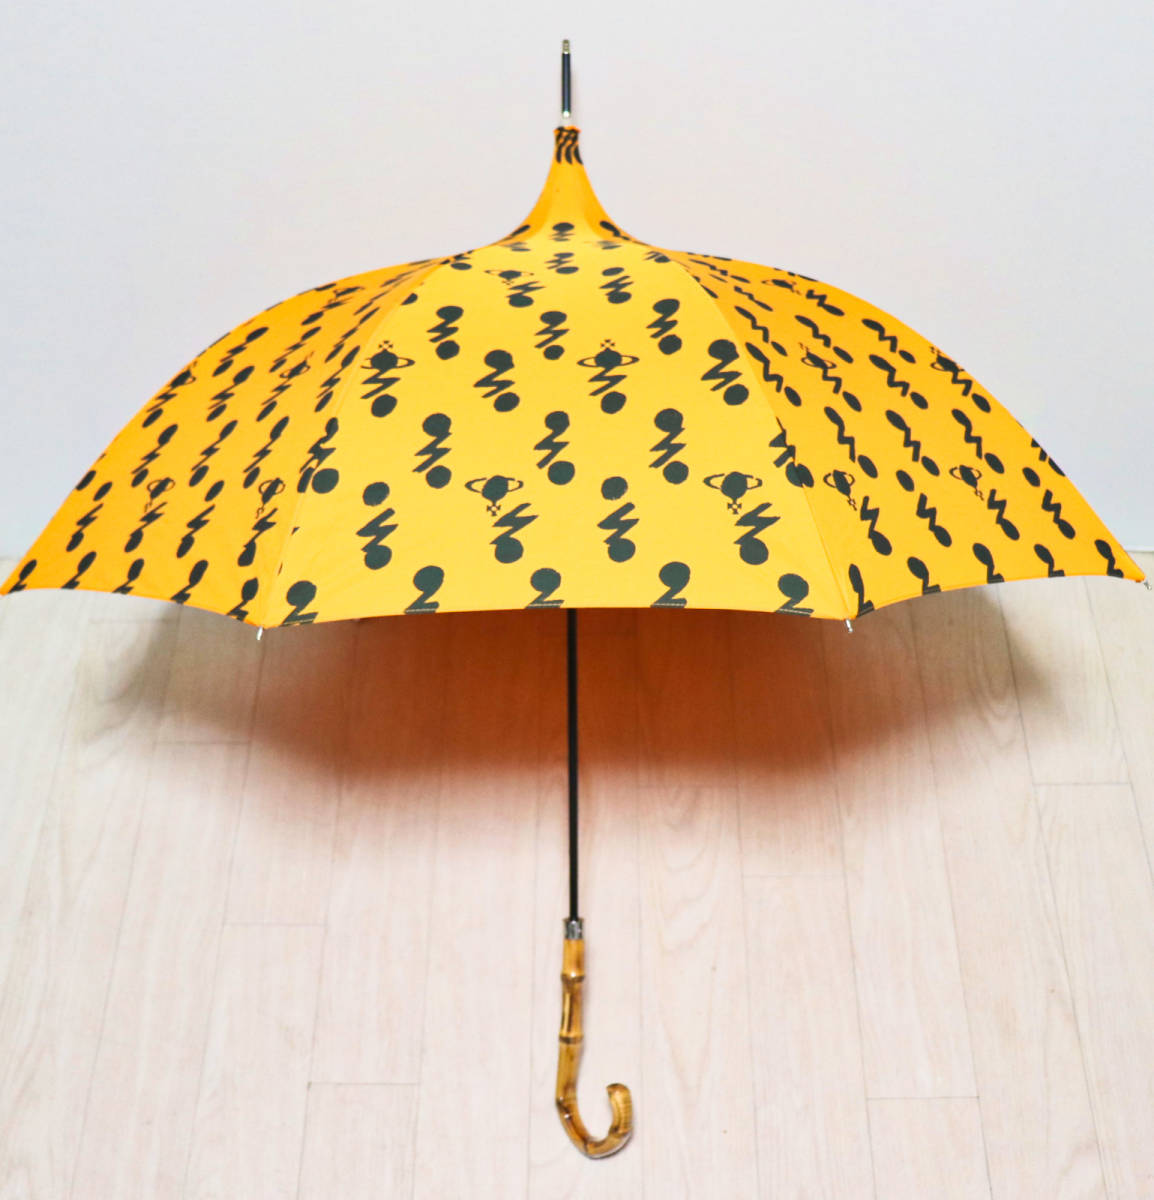 代引き人気  ウエストウッド ヴィヴィアン 00s 〜 90s スクイーグル 傘 折り畳み傘 傘